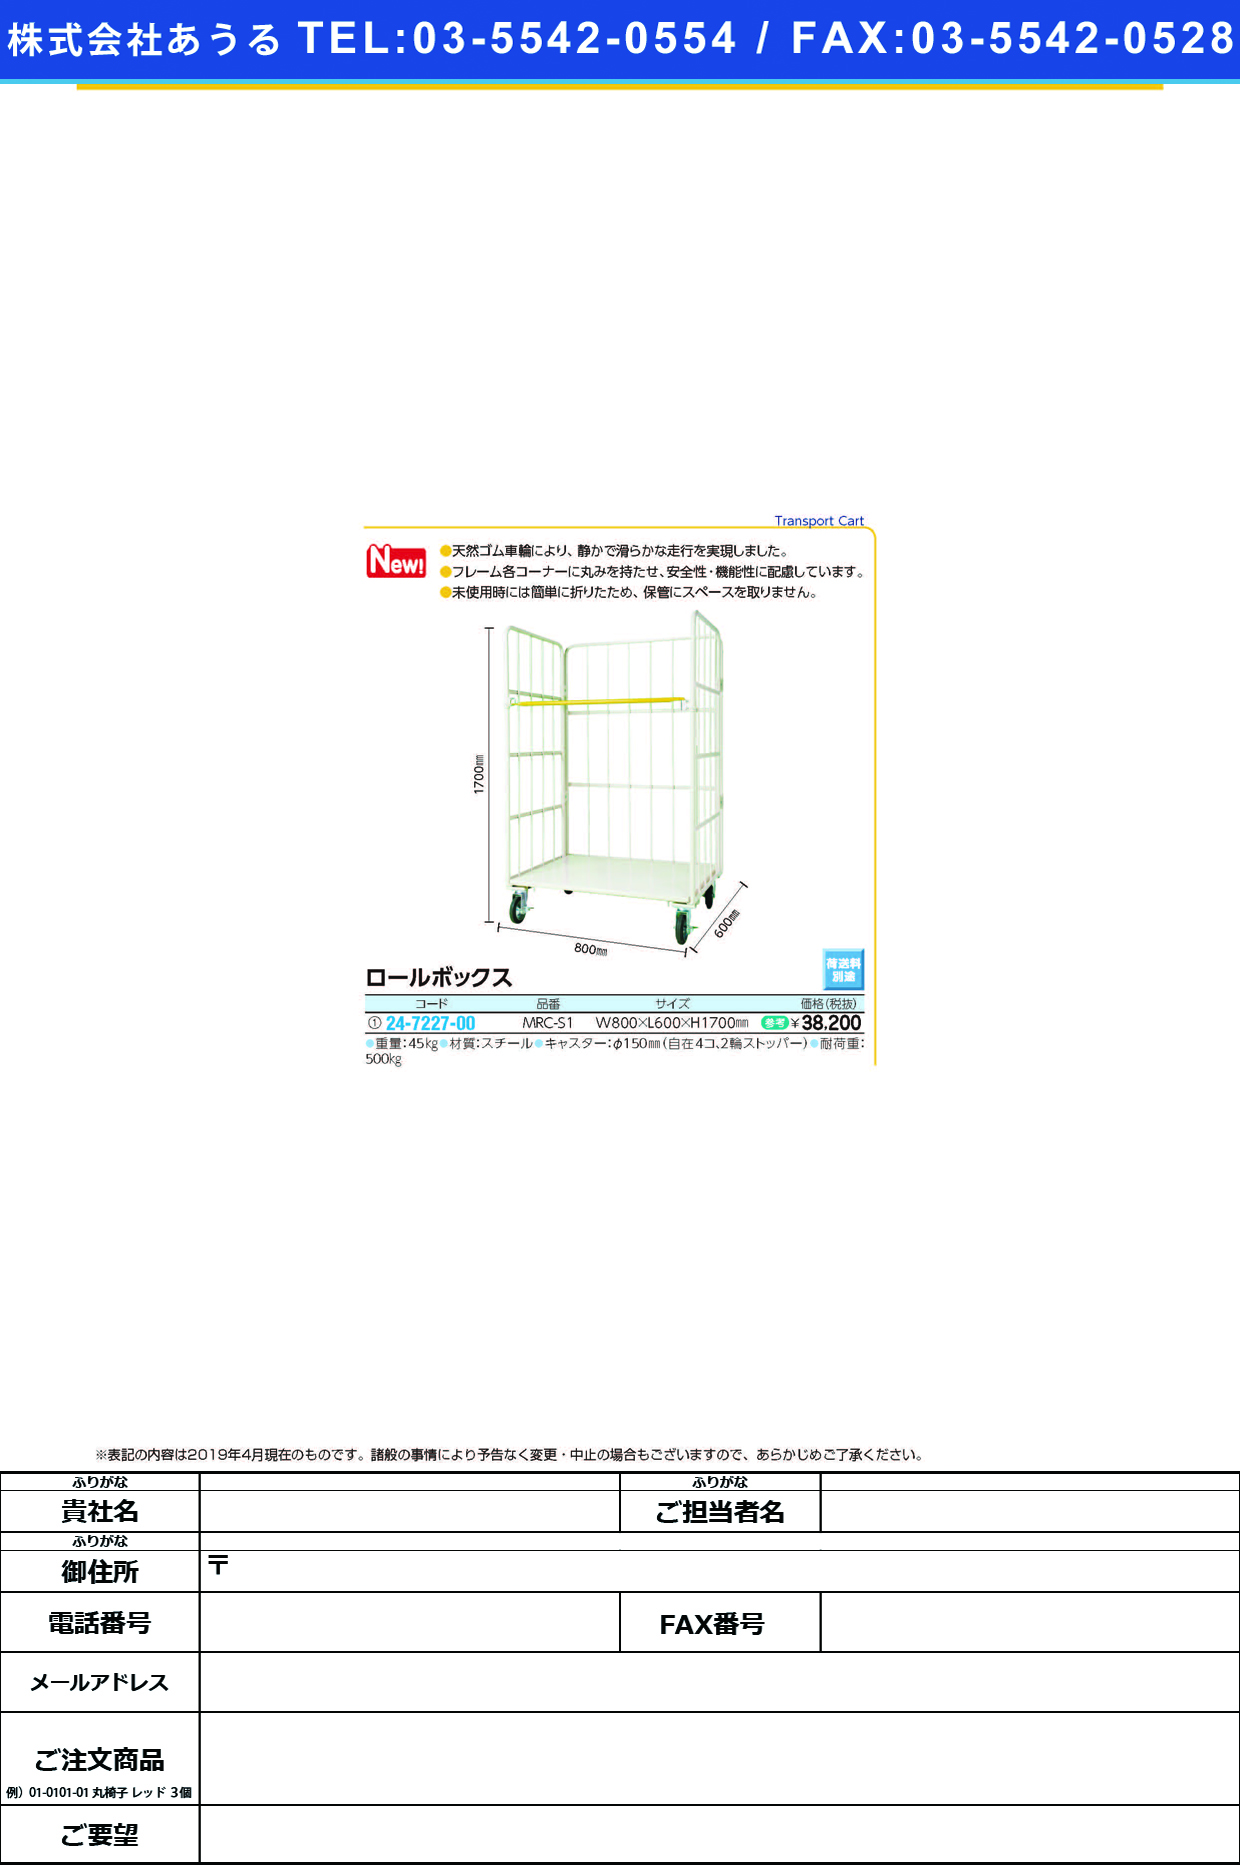 (24-7227-00)ロールボックスMRC-S1 ﾛｰﾙﾎﾞｯｸｽ(マキテック)【1台単位】【2019年カタログ商品】